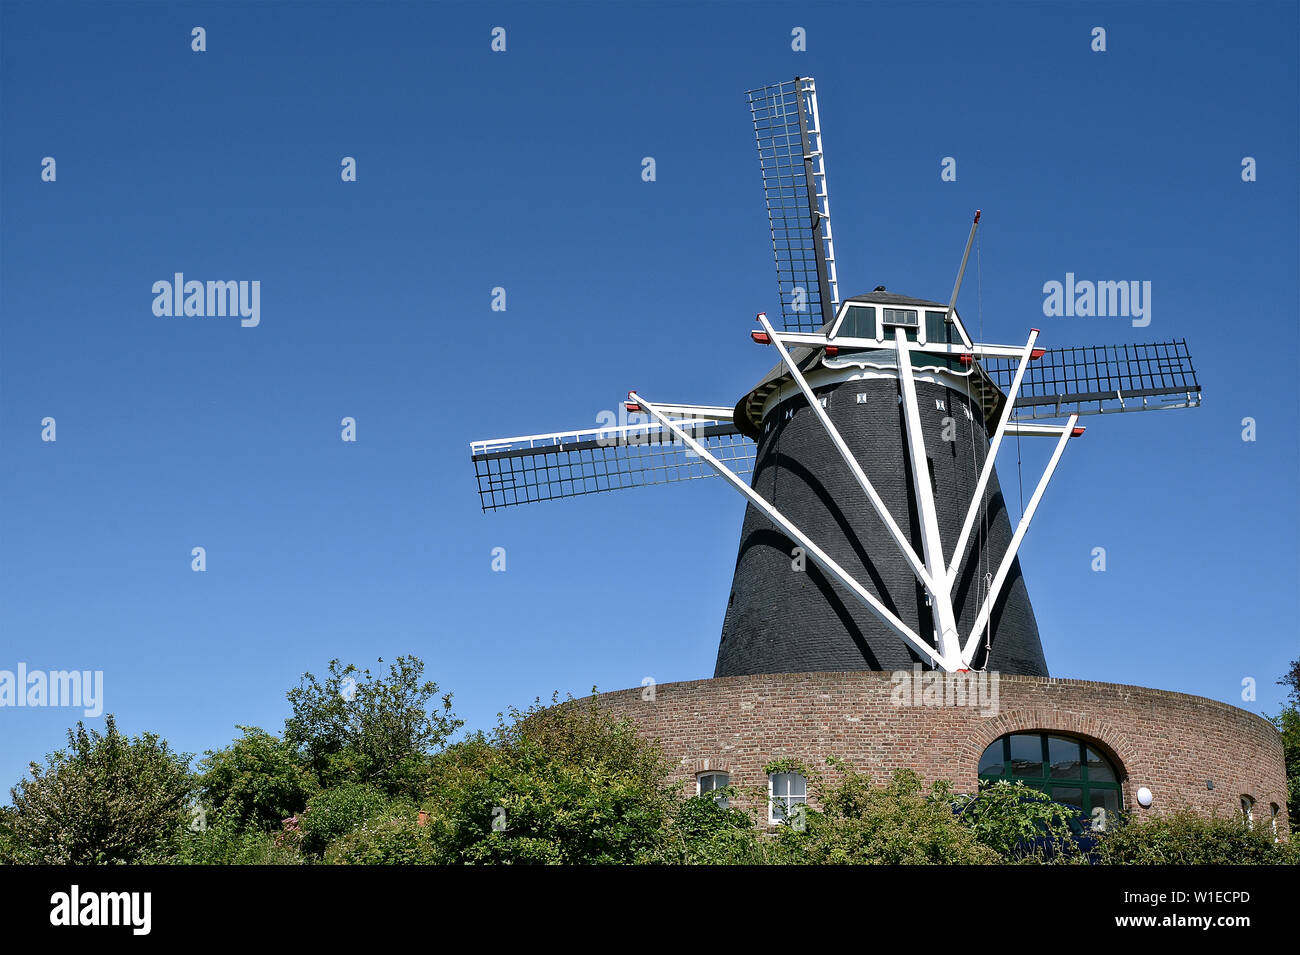 Op de Vrouweheide, un mulino a vento sulla Vrouwenheide a sud di Ubachsberg, Voerendaal, nella provincia olandese di Limburgo. Foto Stock